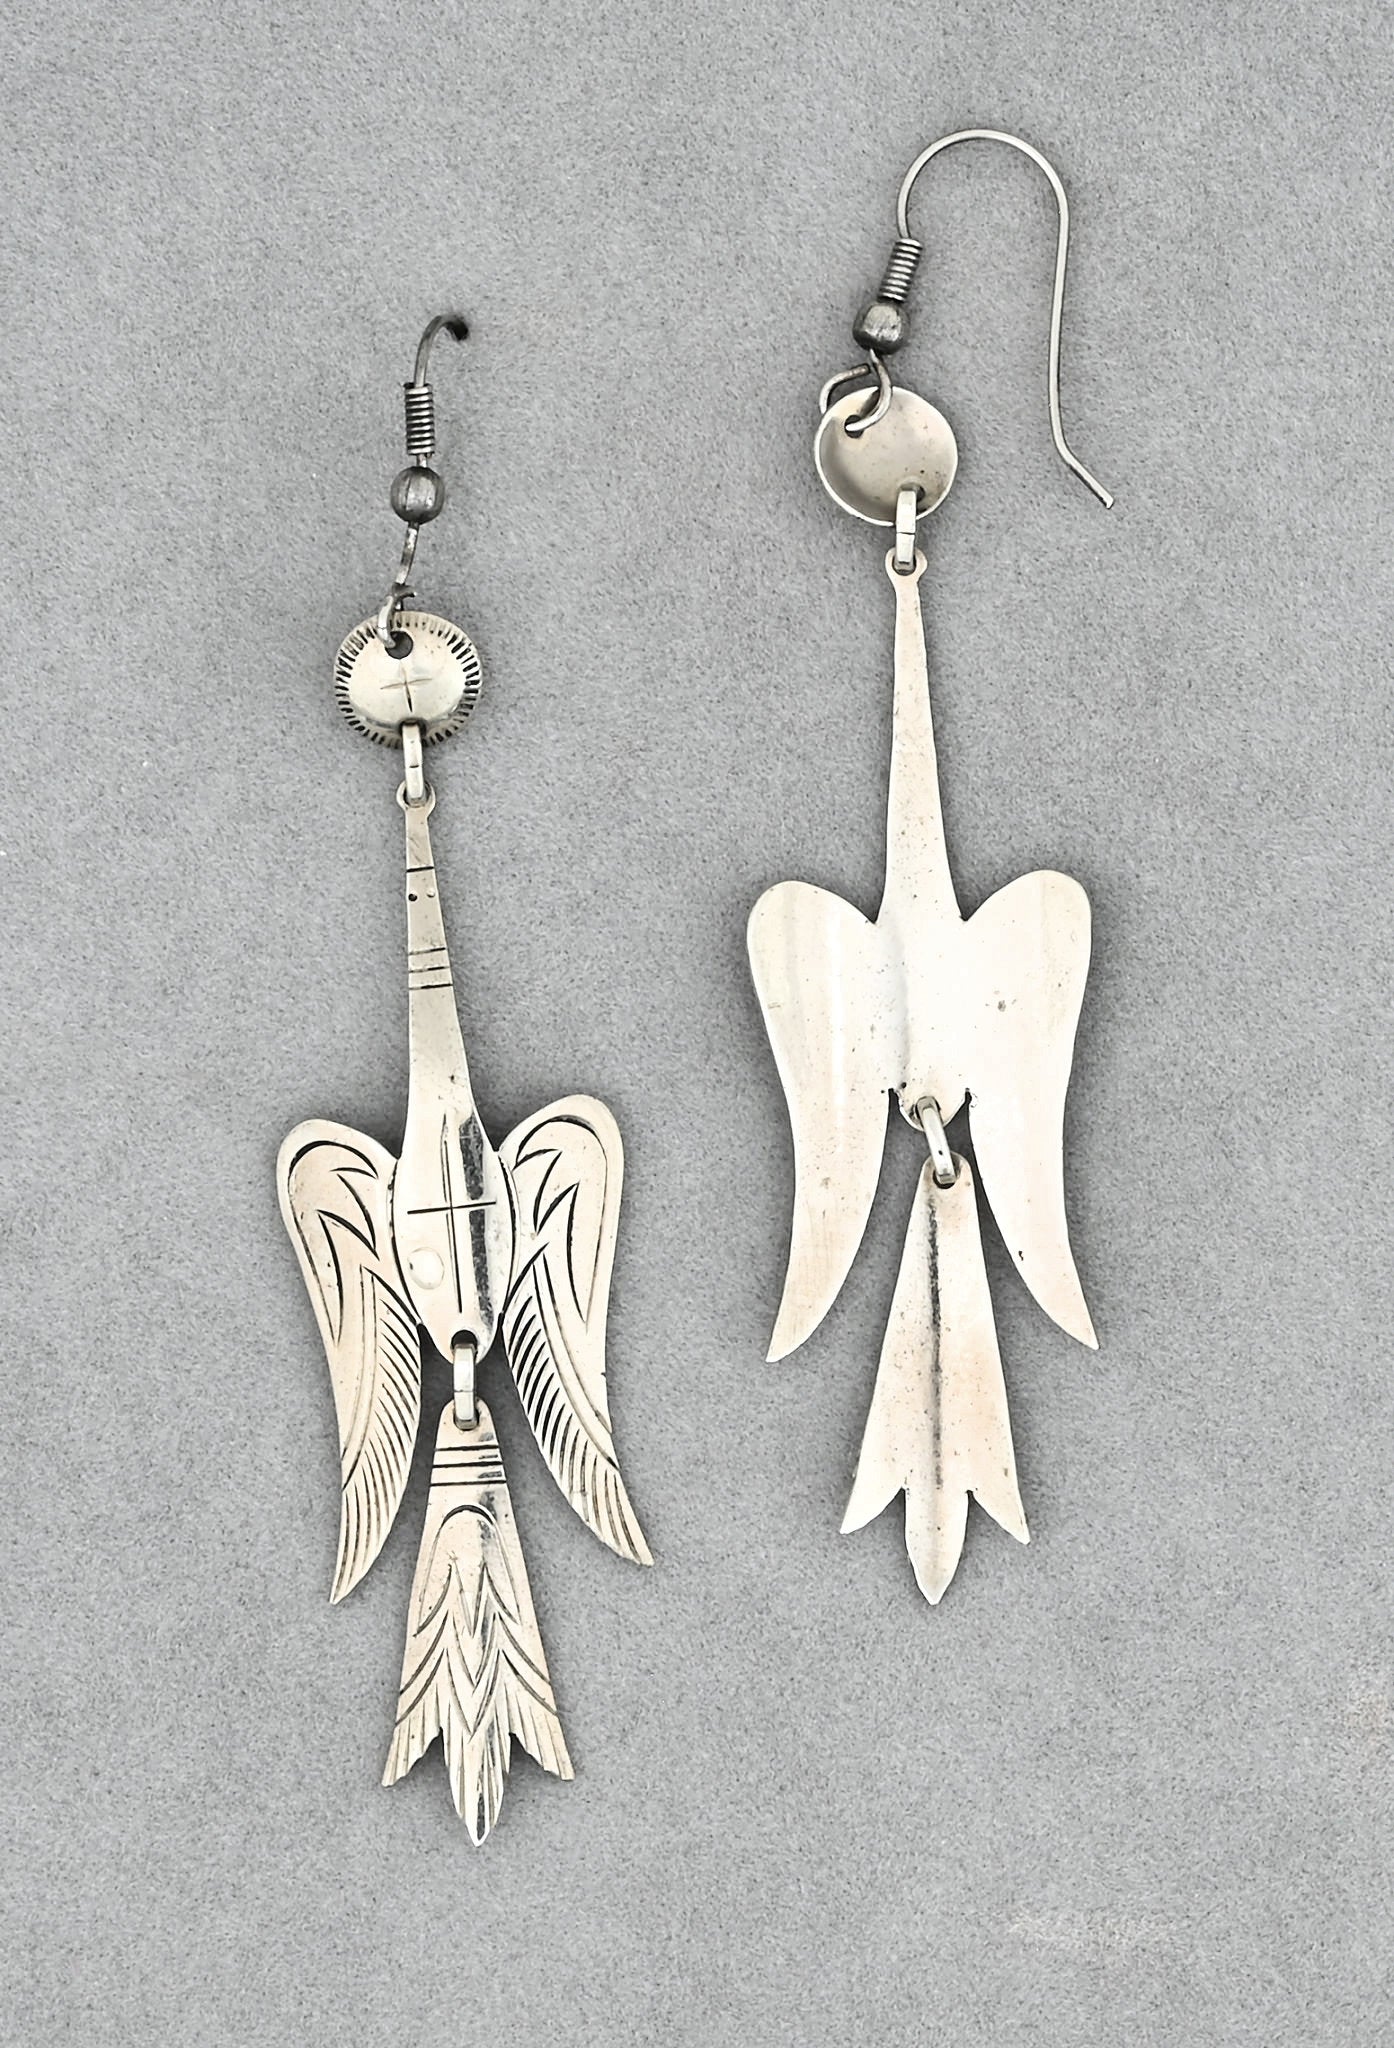 Peyote Bird Earrings by Bruce Caesar